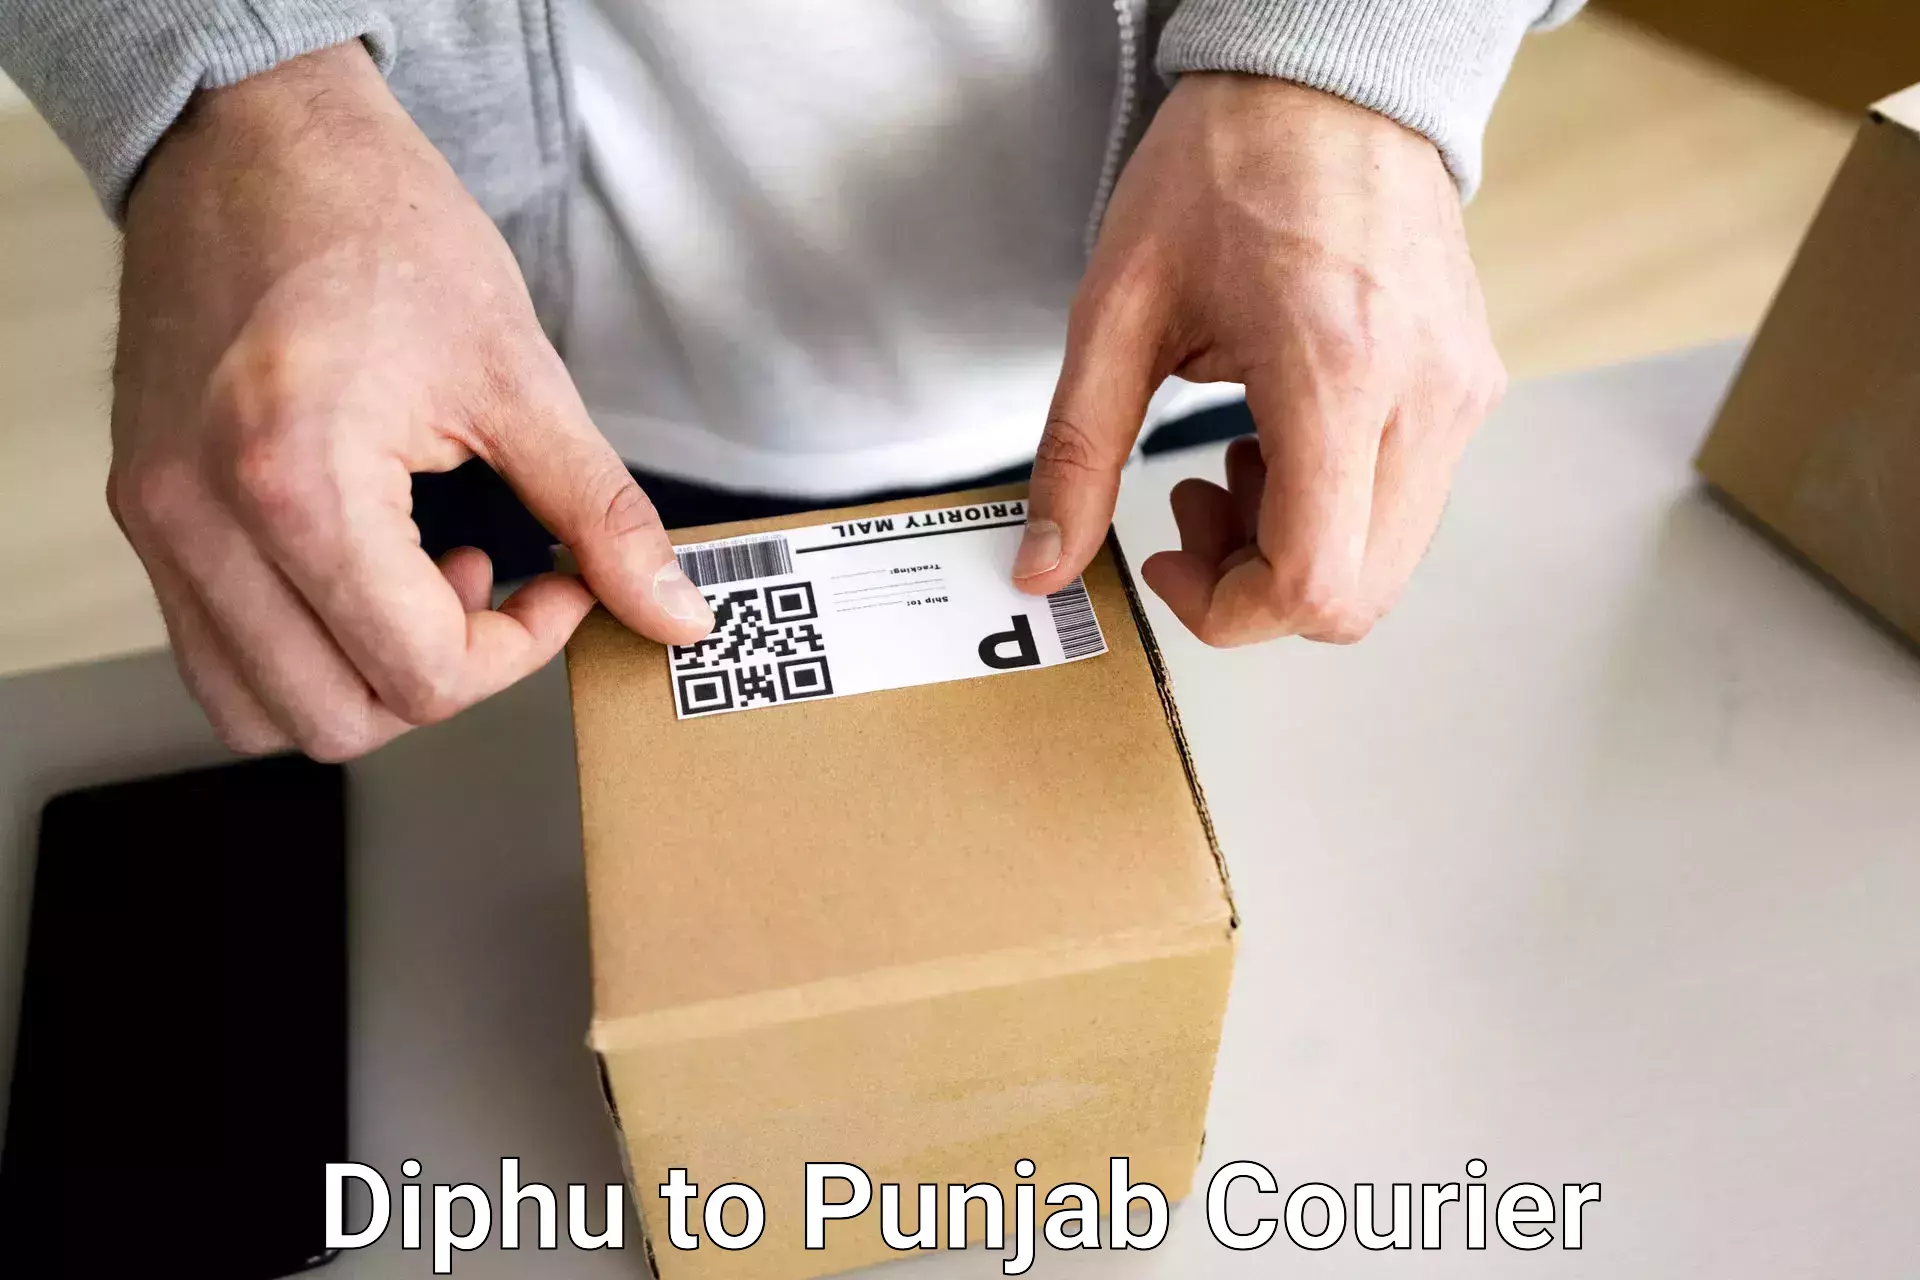 Luggage forwarding service Diphu to Punjab